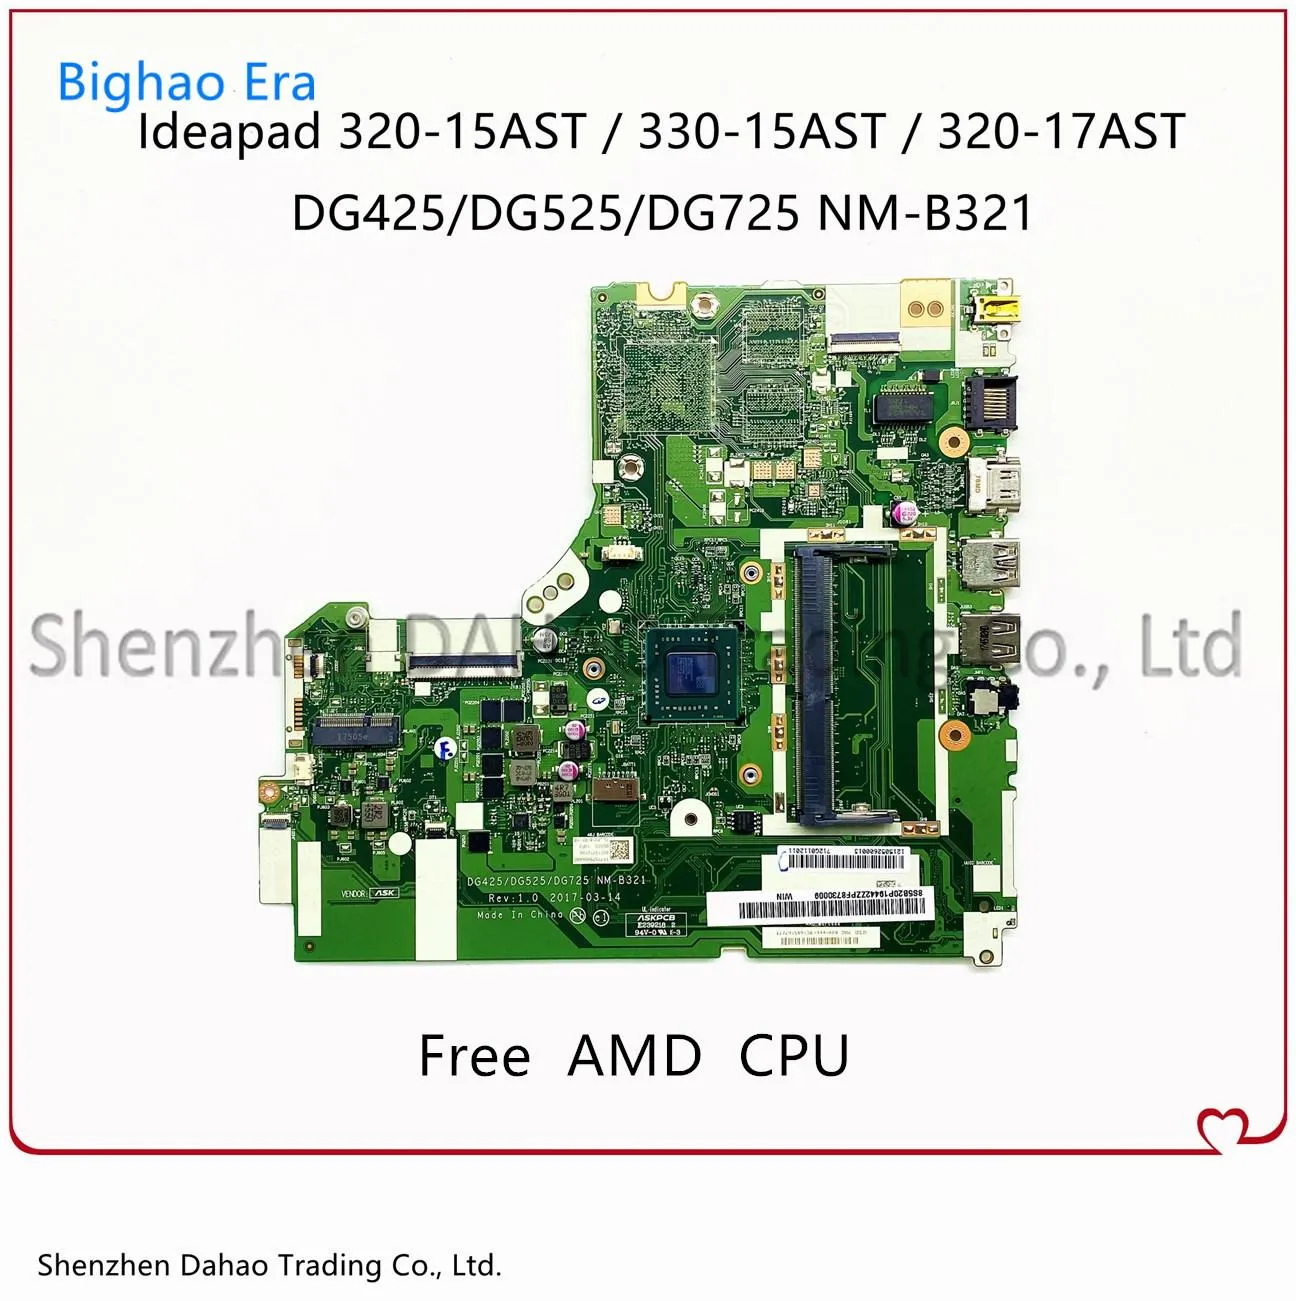 Carte mère pour Lenovo 32015ast 33015ast 32017ast Boîtier mère d'ordinateur portable avec AMD E2 A4 A6 A9 CPU DDR4 DG425 DG525 DG725 NMB321